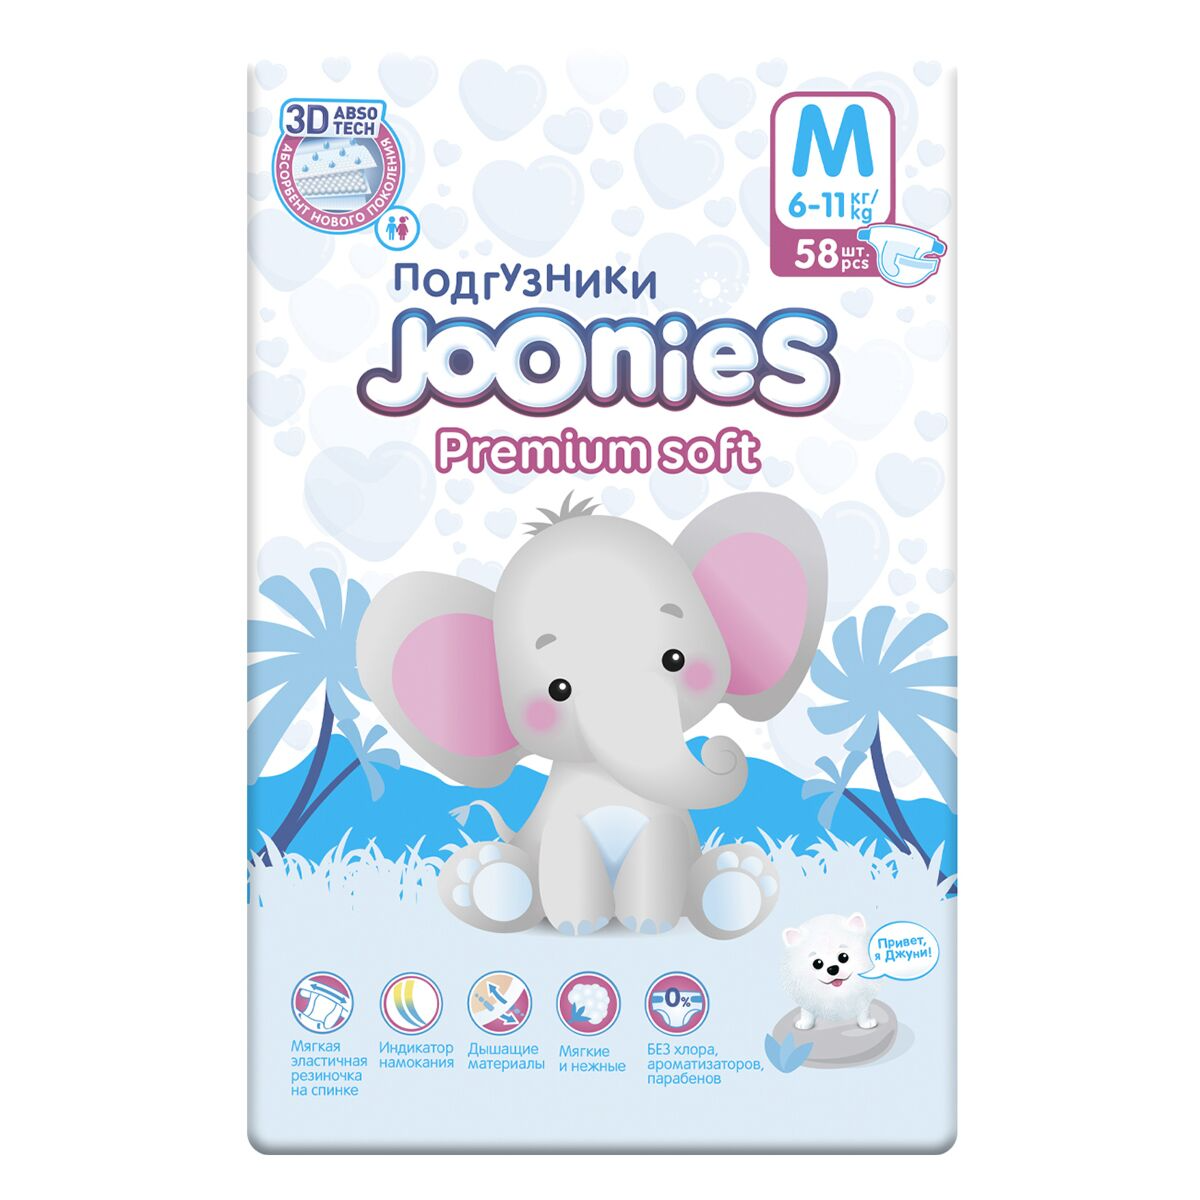 Фото Подгузники Joonies Premium Soft, размер M (6-11 кг), 58 шт 953212KZ